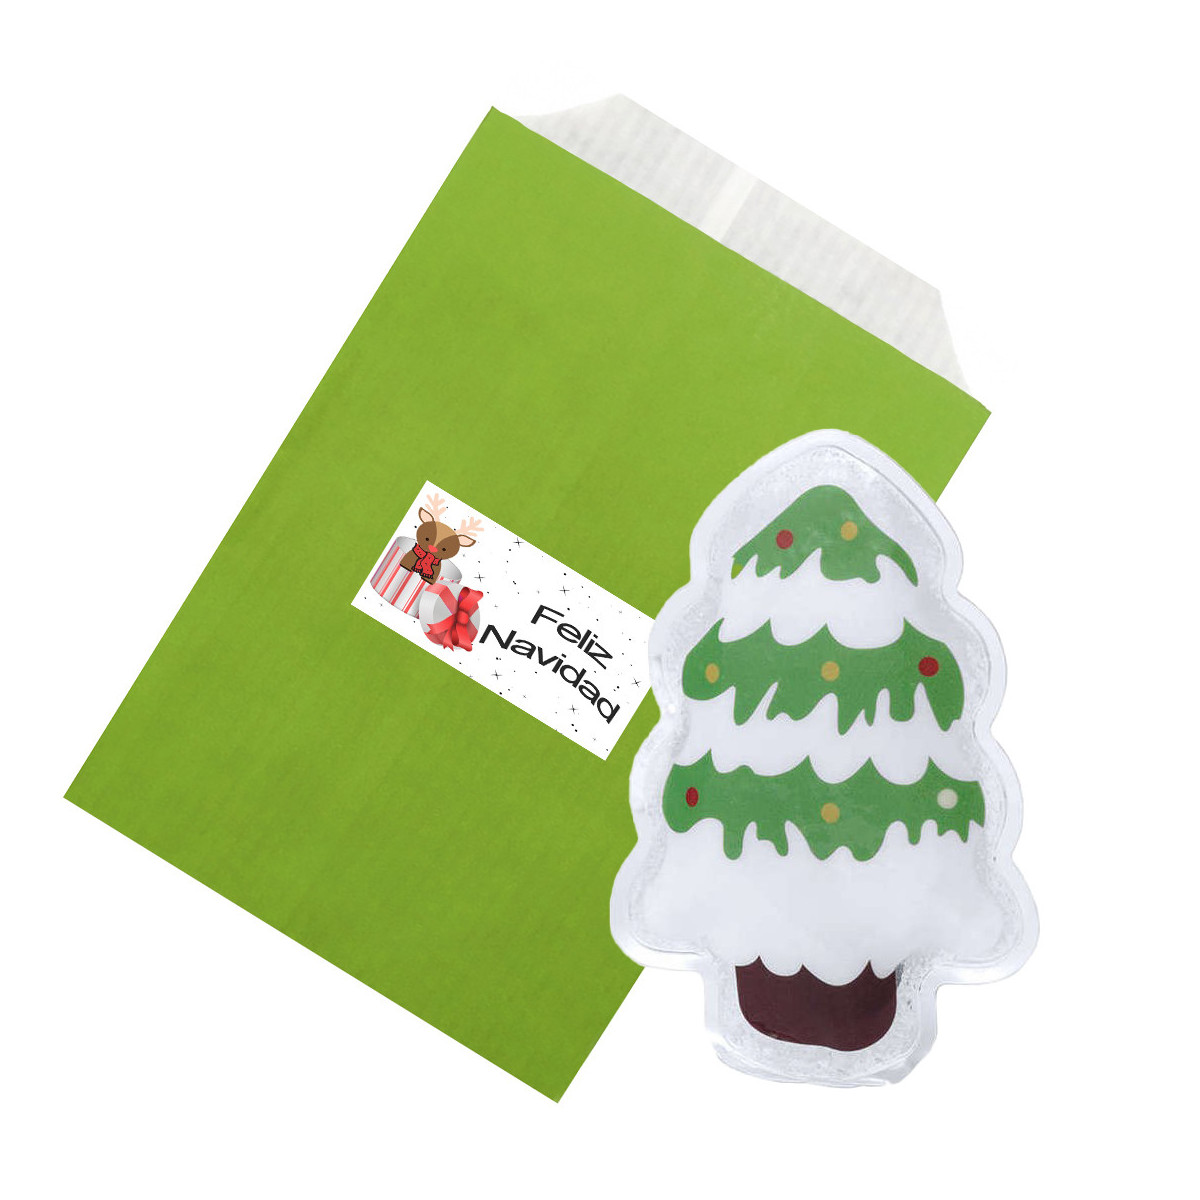 Aquecedor de mãos de bolso em formato de árvore de natal apresentado em envelope verde com adesivo de natal